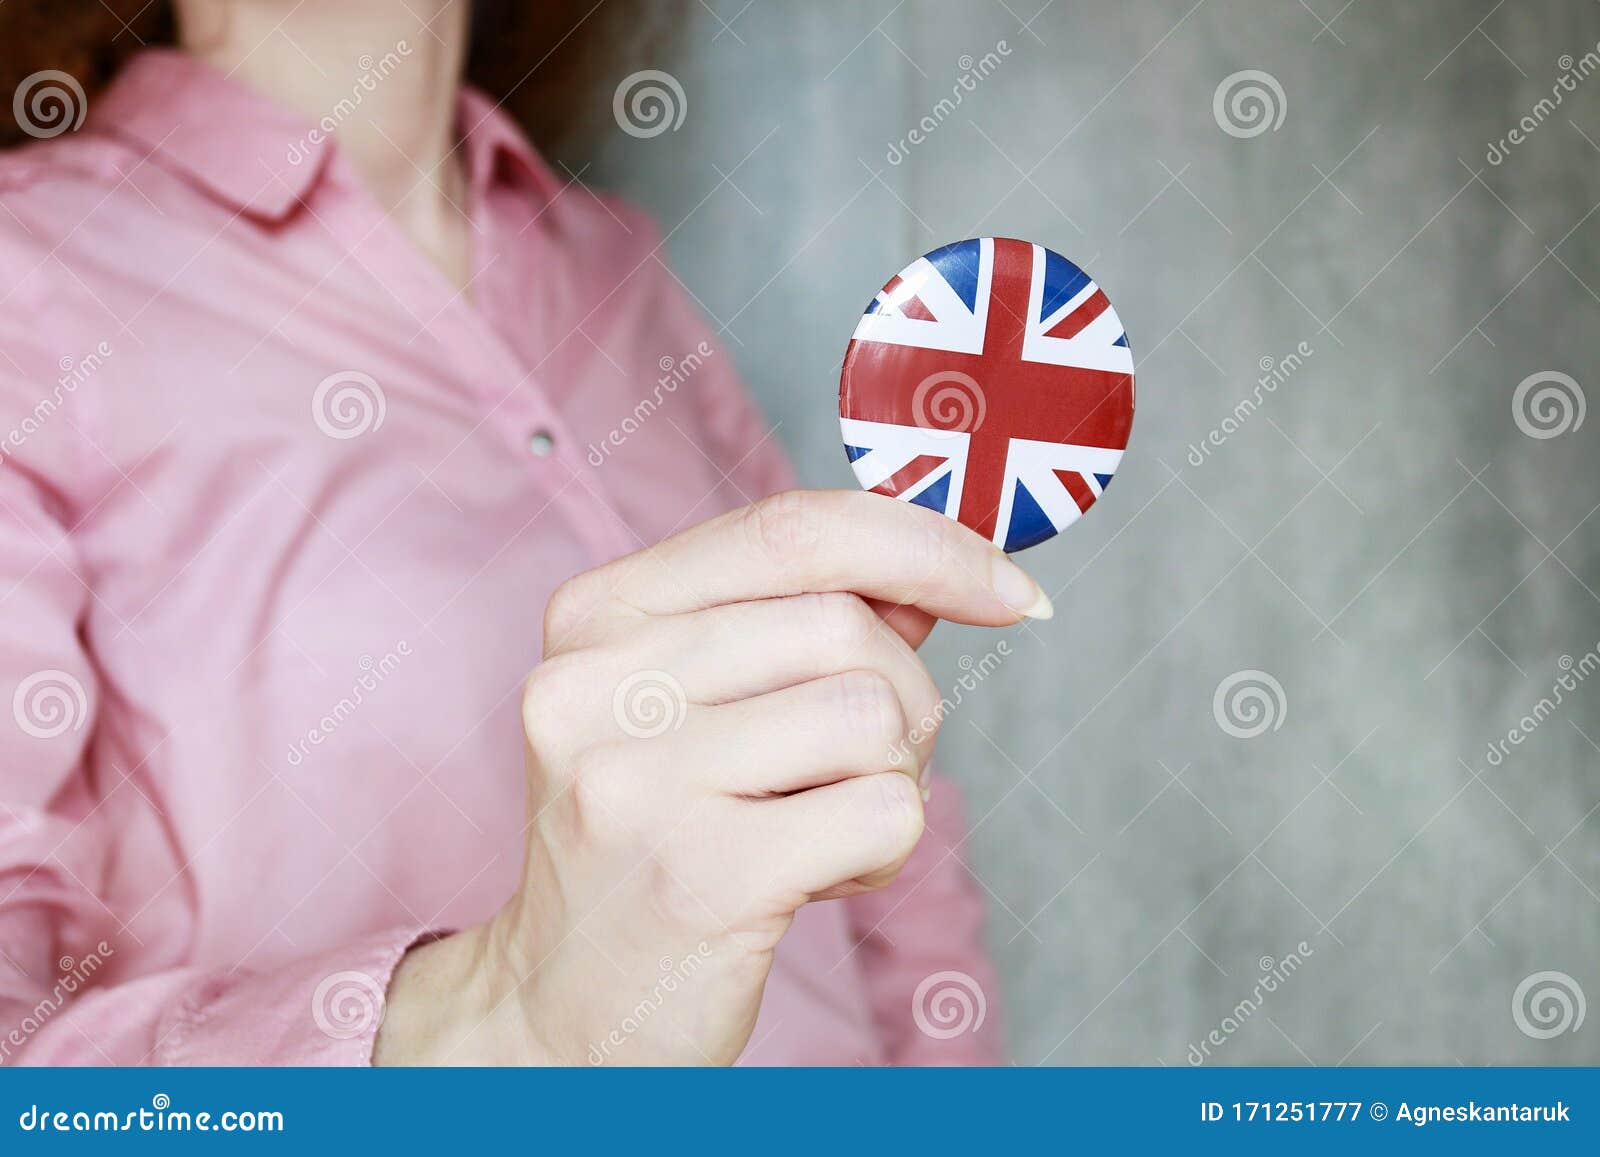 Die Flagge Grossbritannien Druckte Auf Dem Knopfausweis Und Von Frau Stockbild Bild Von Knopfausweis Druckte